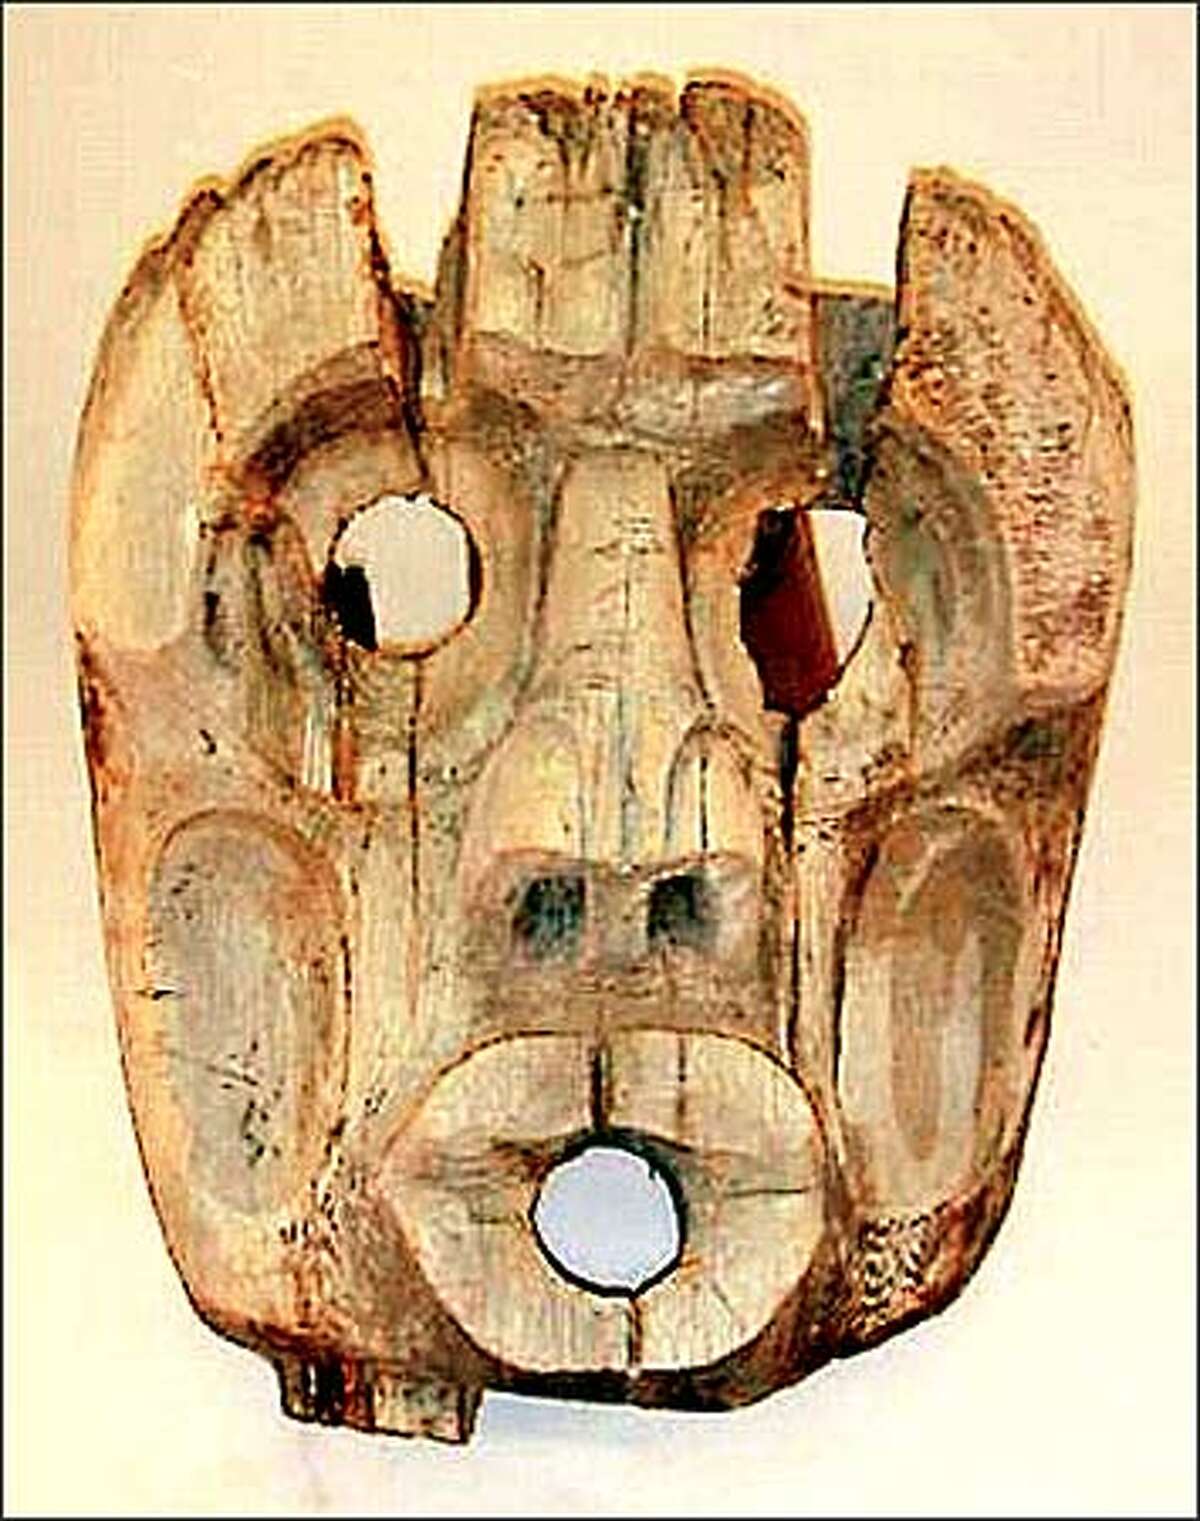 A small Kwakiutl Dzoon mask.